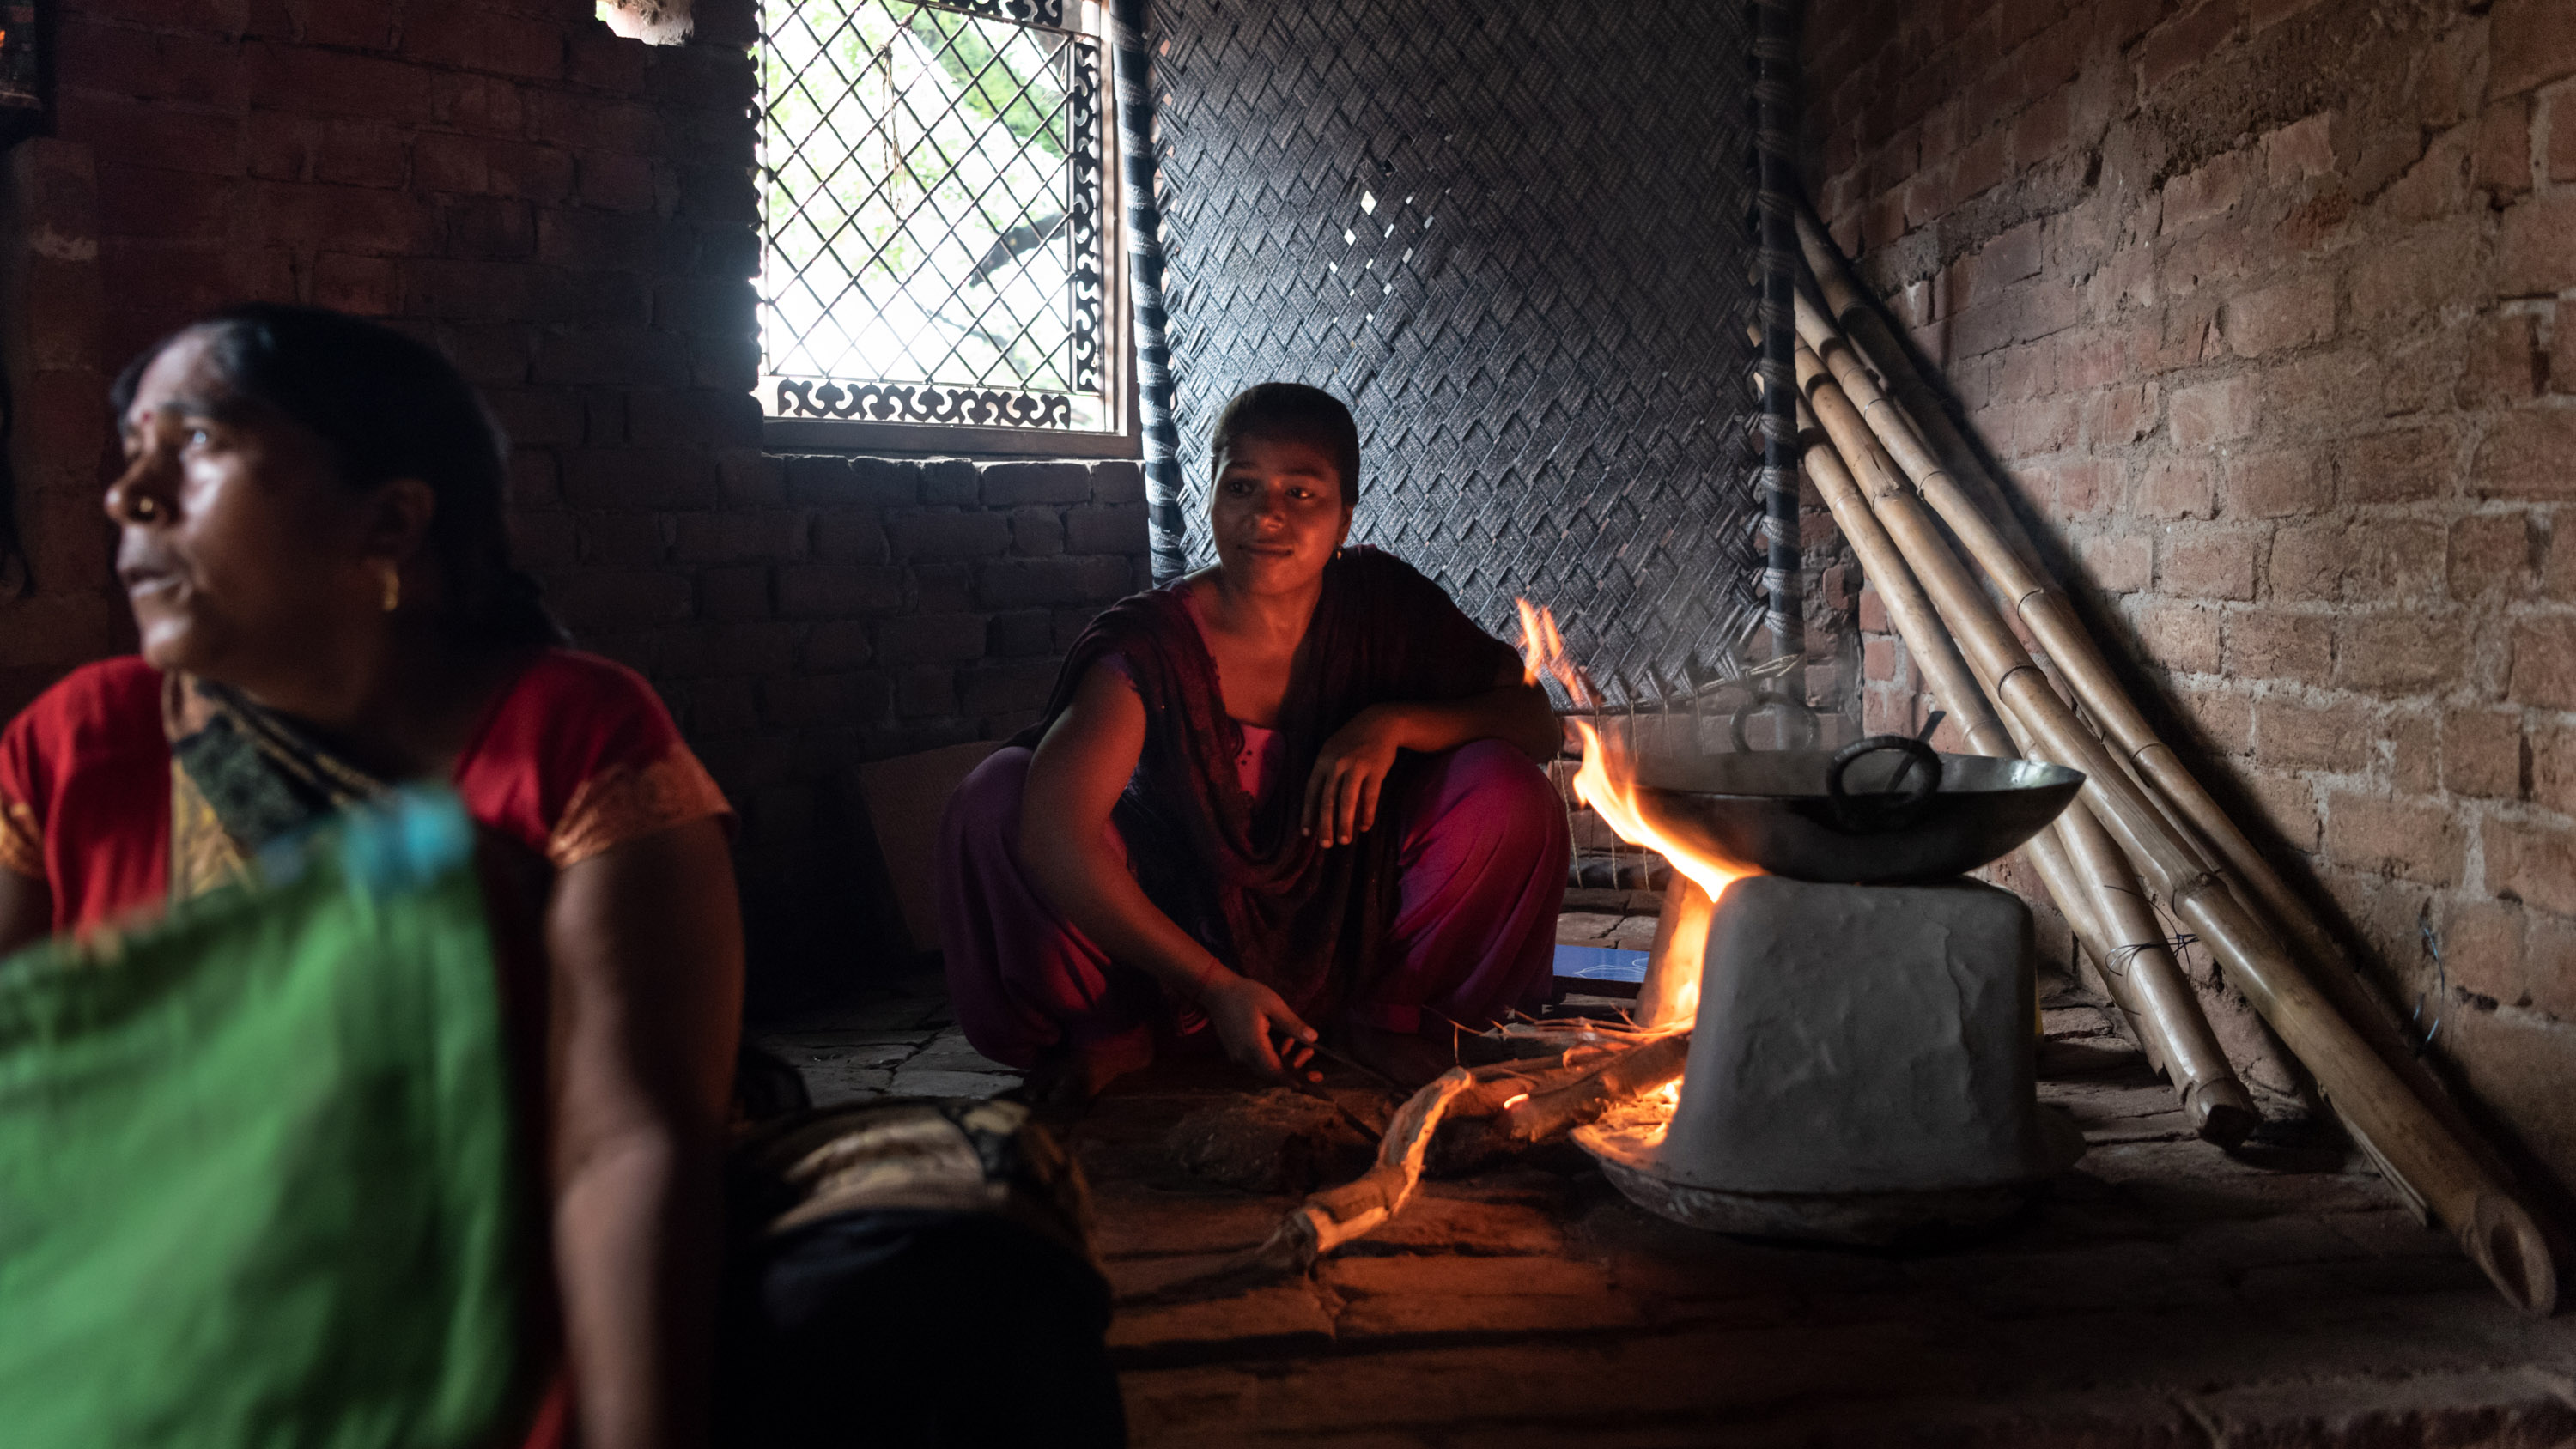 دیویا، 20 ساله، در میان گرمای شدید در خانه اش غذا درست می کند